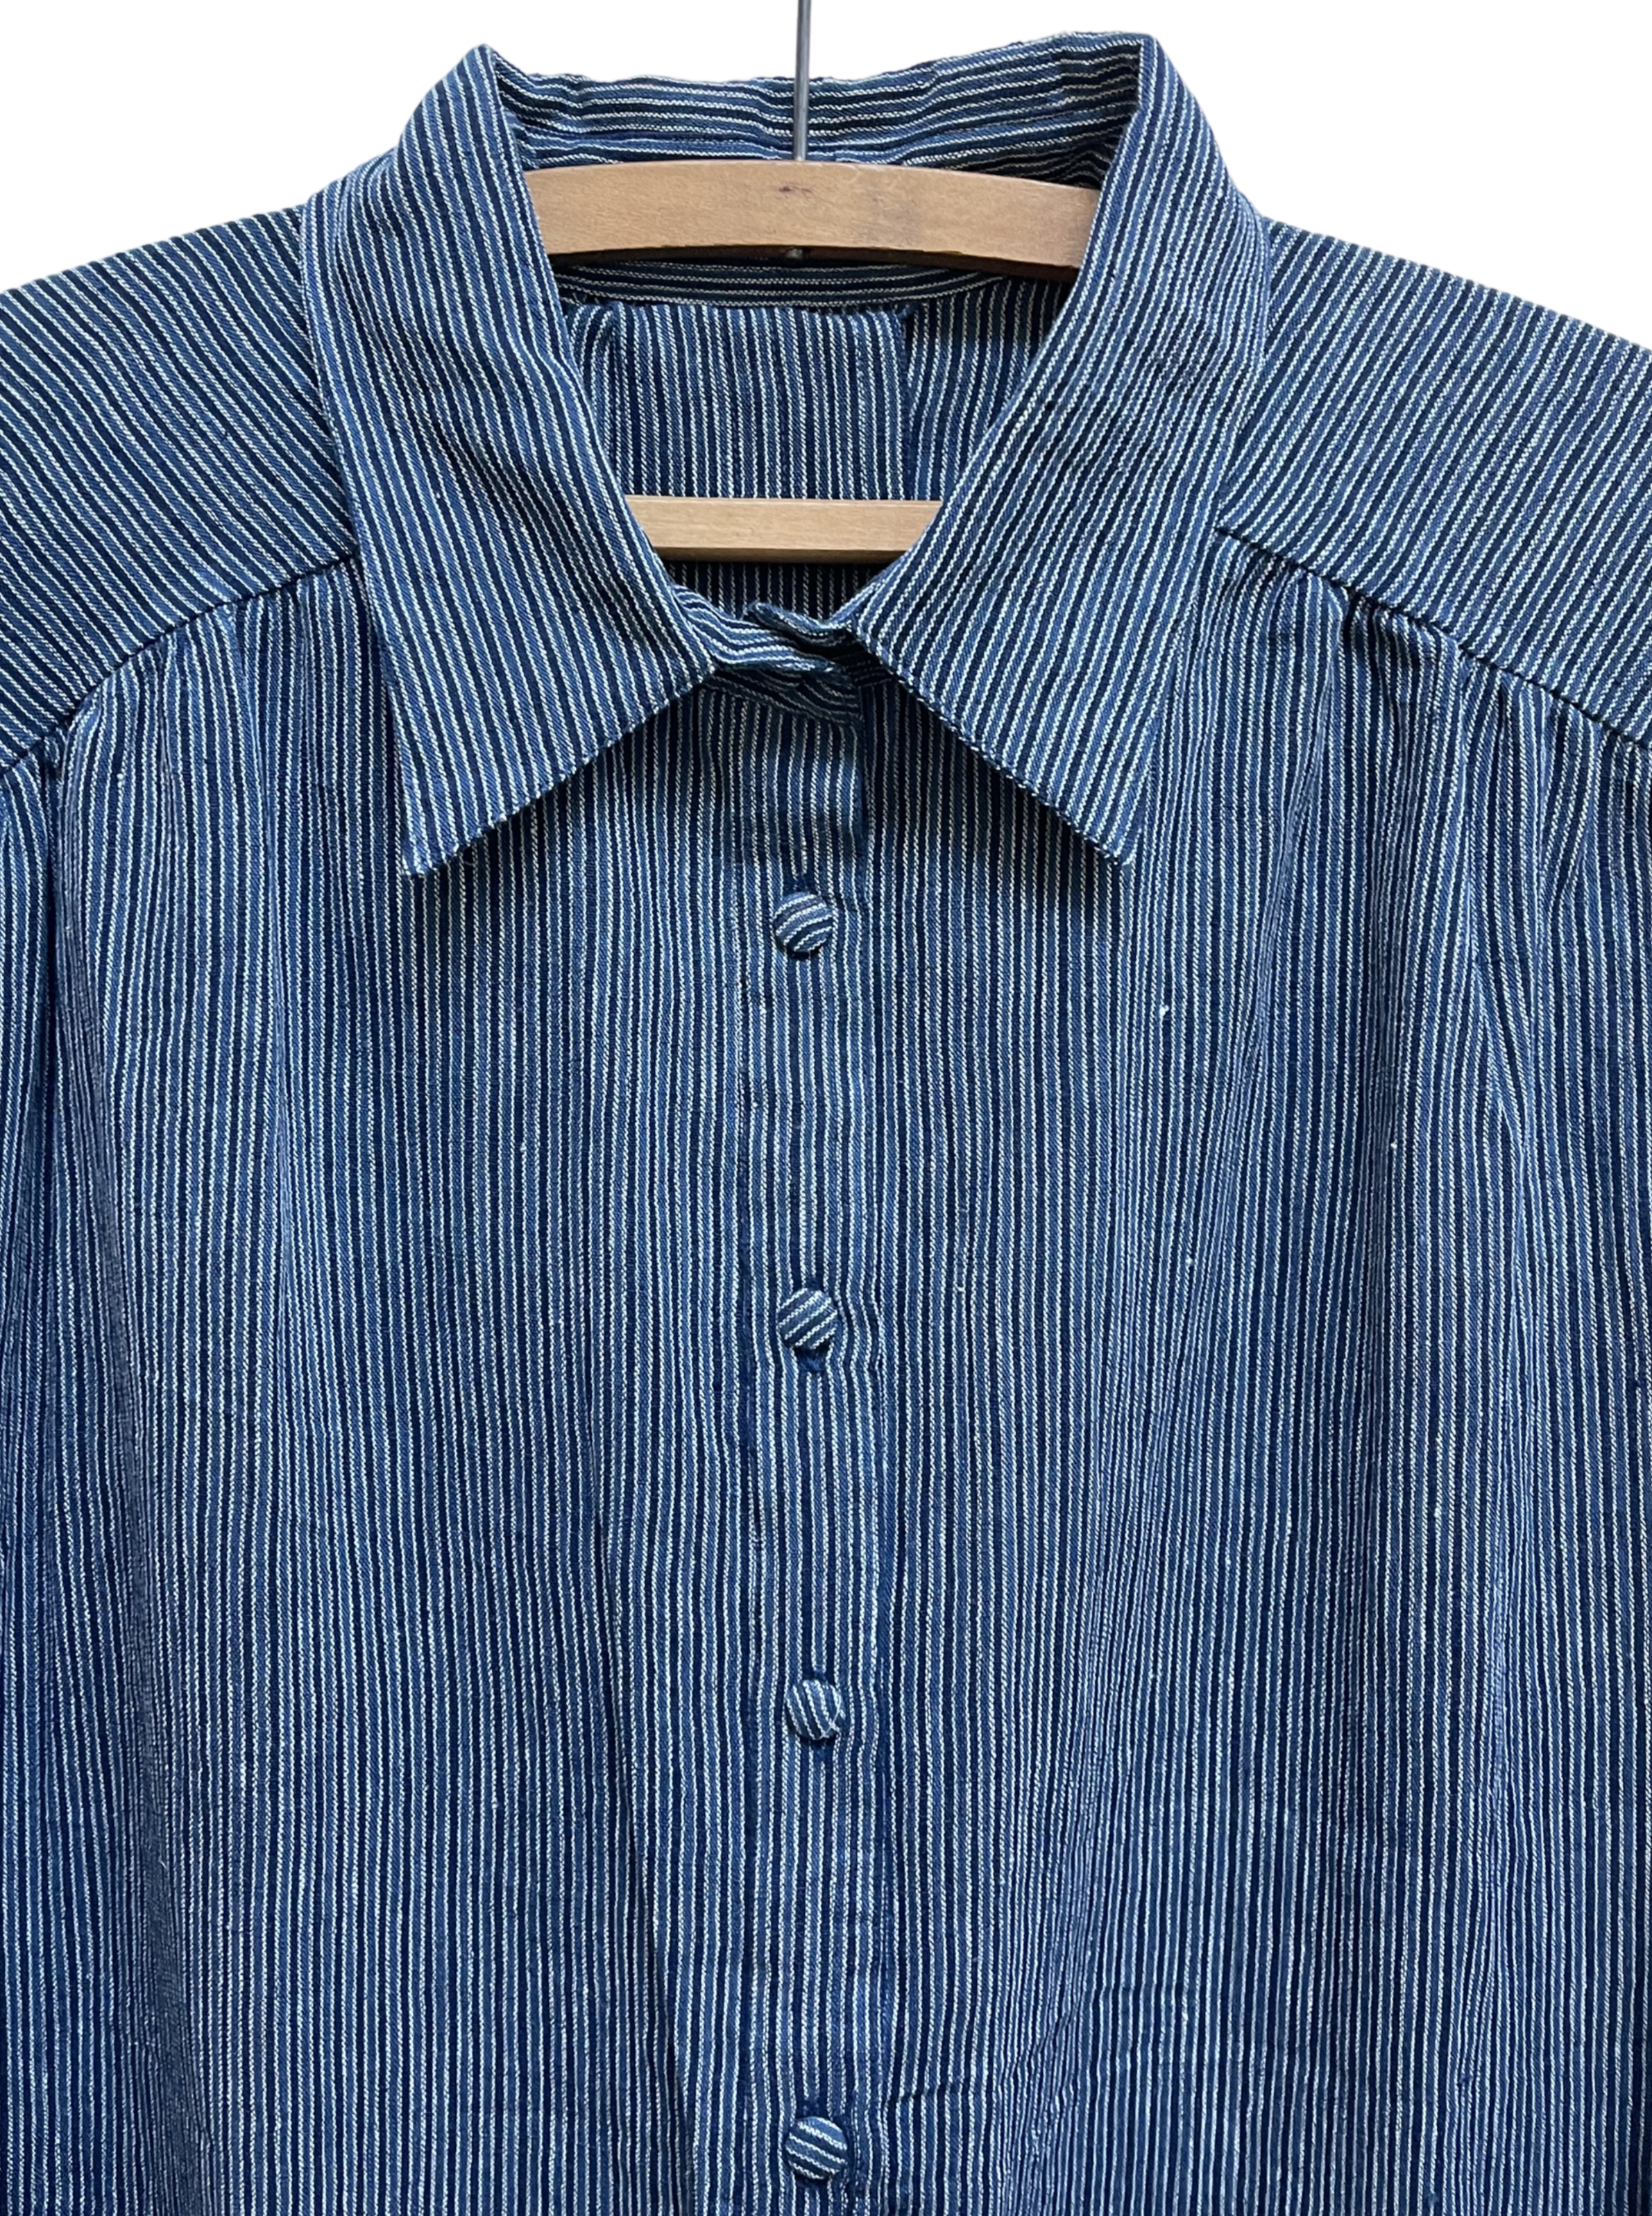 Long Shirtdress in Indigo Stripe